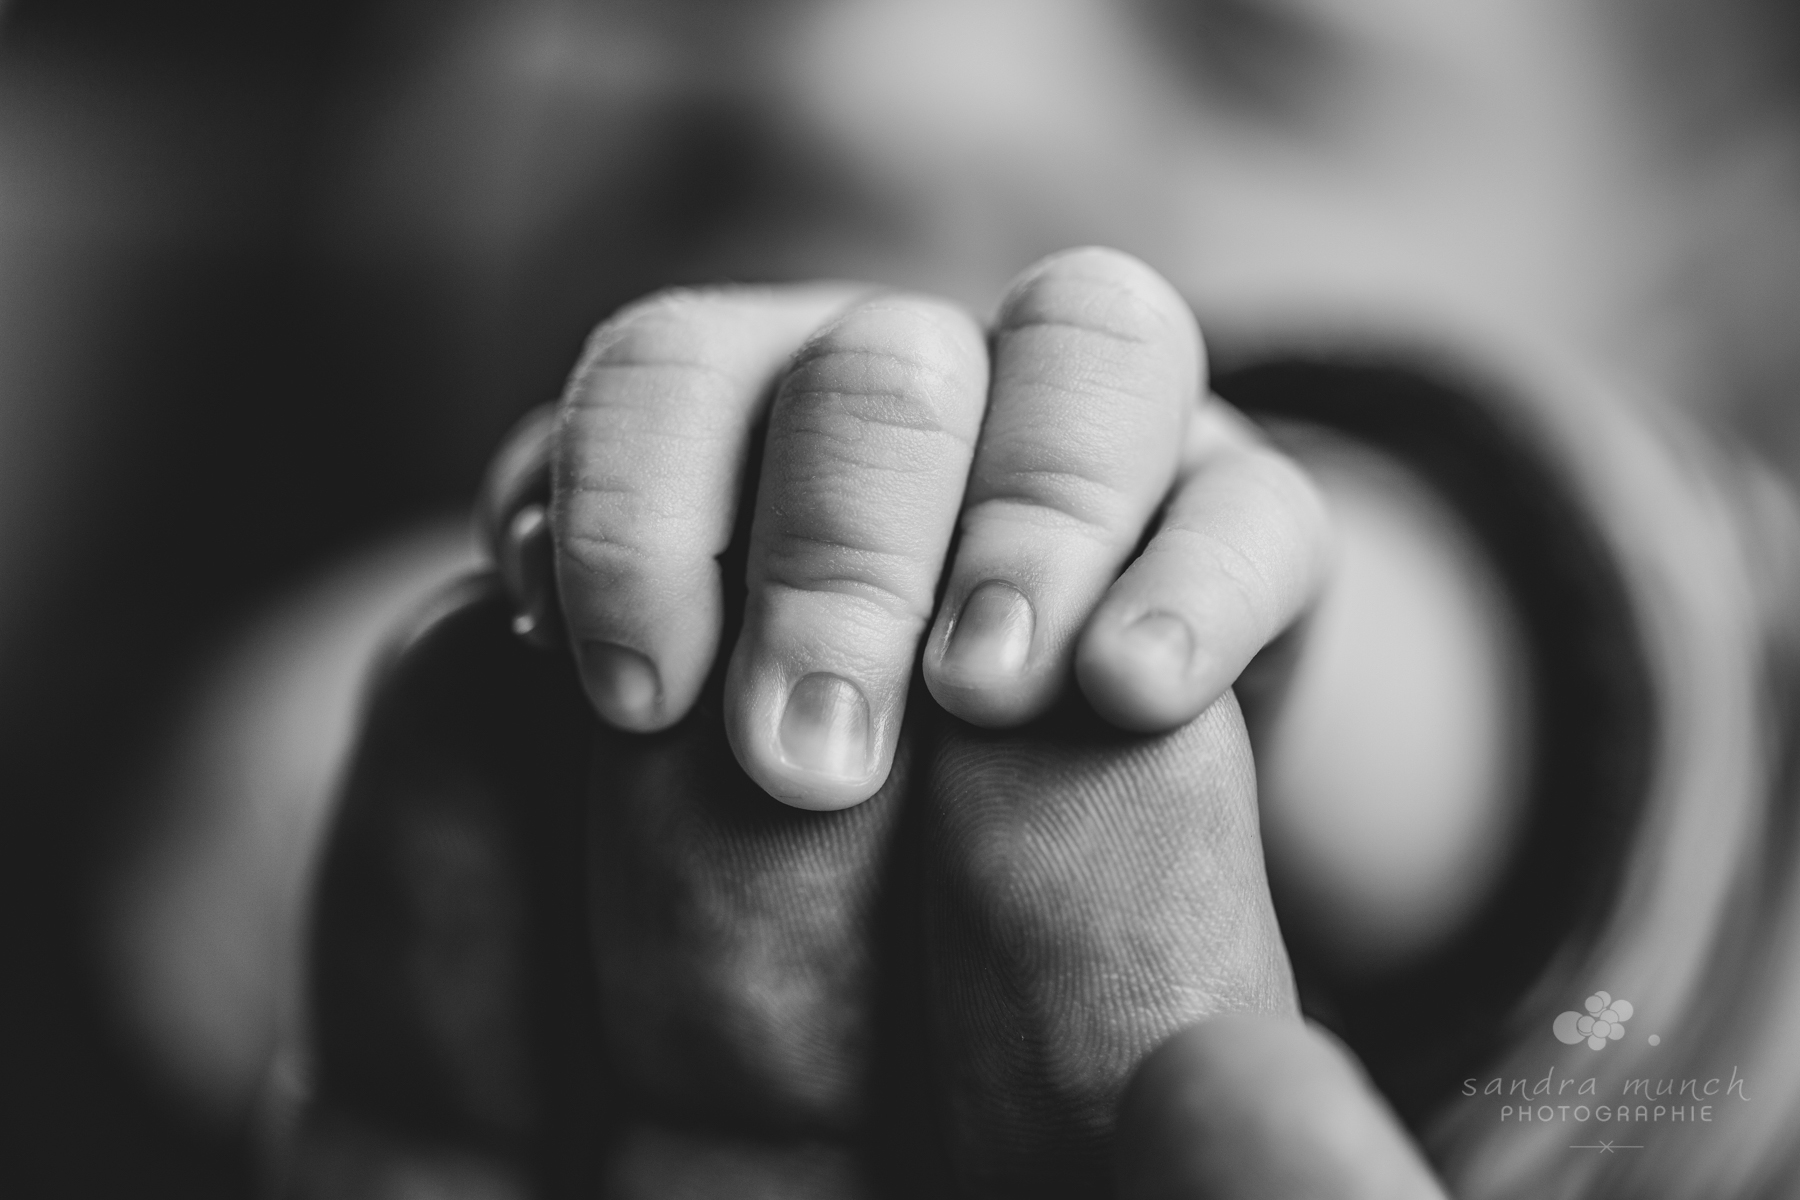 séance photo nouveau-né petite main de bébé